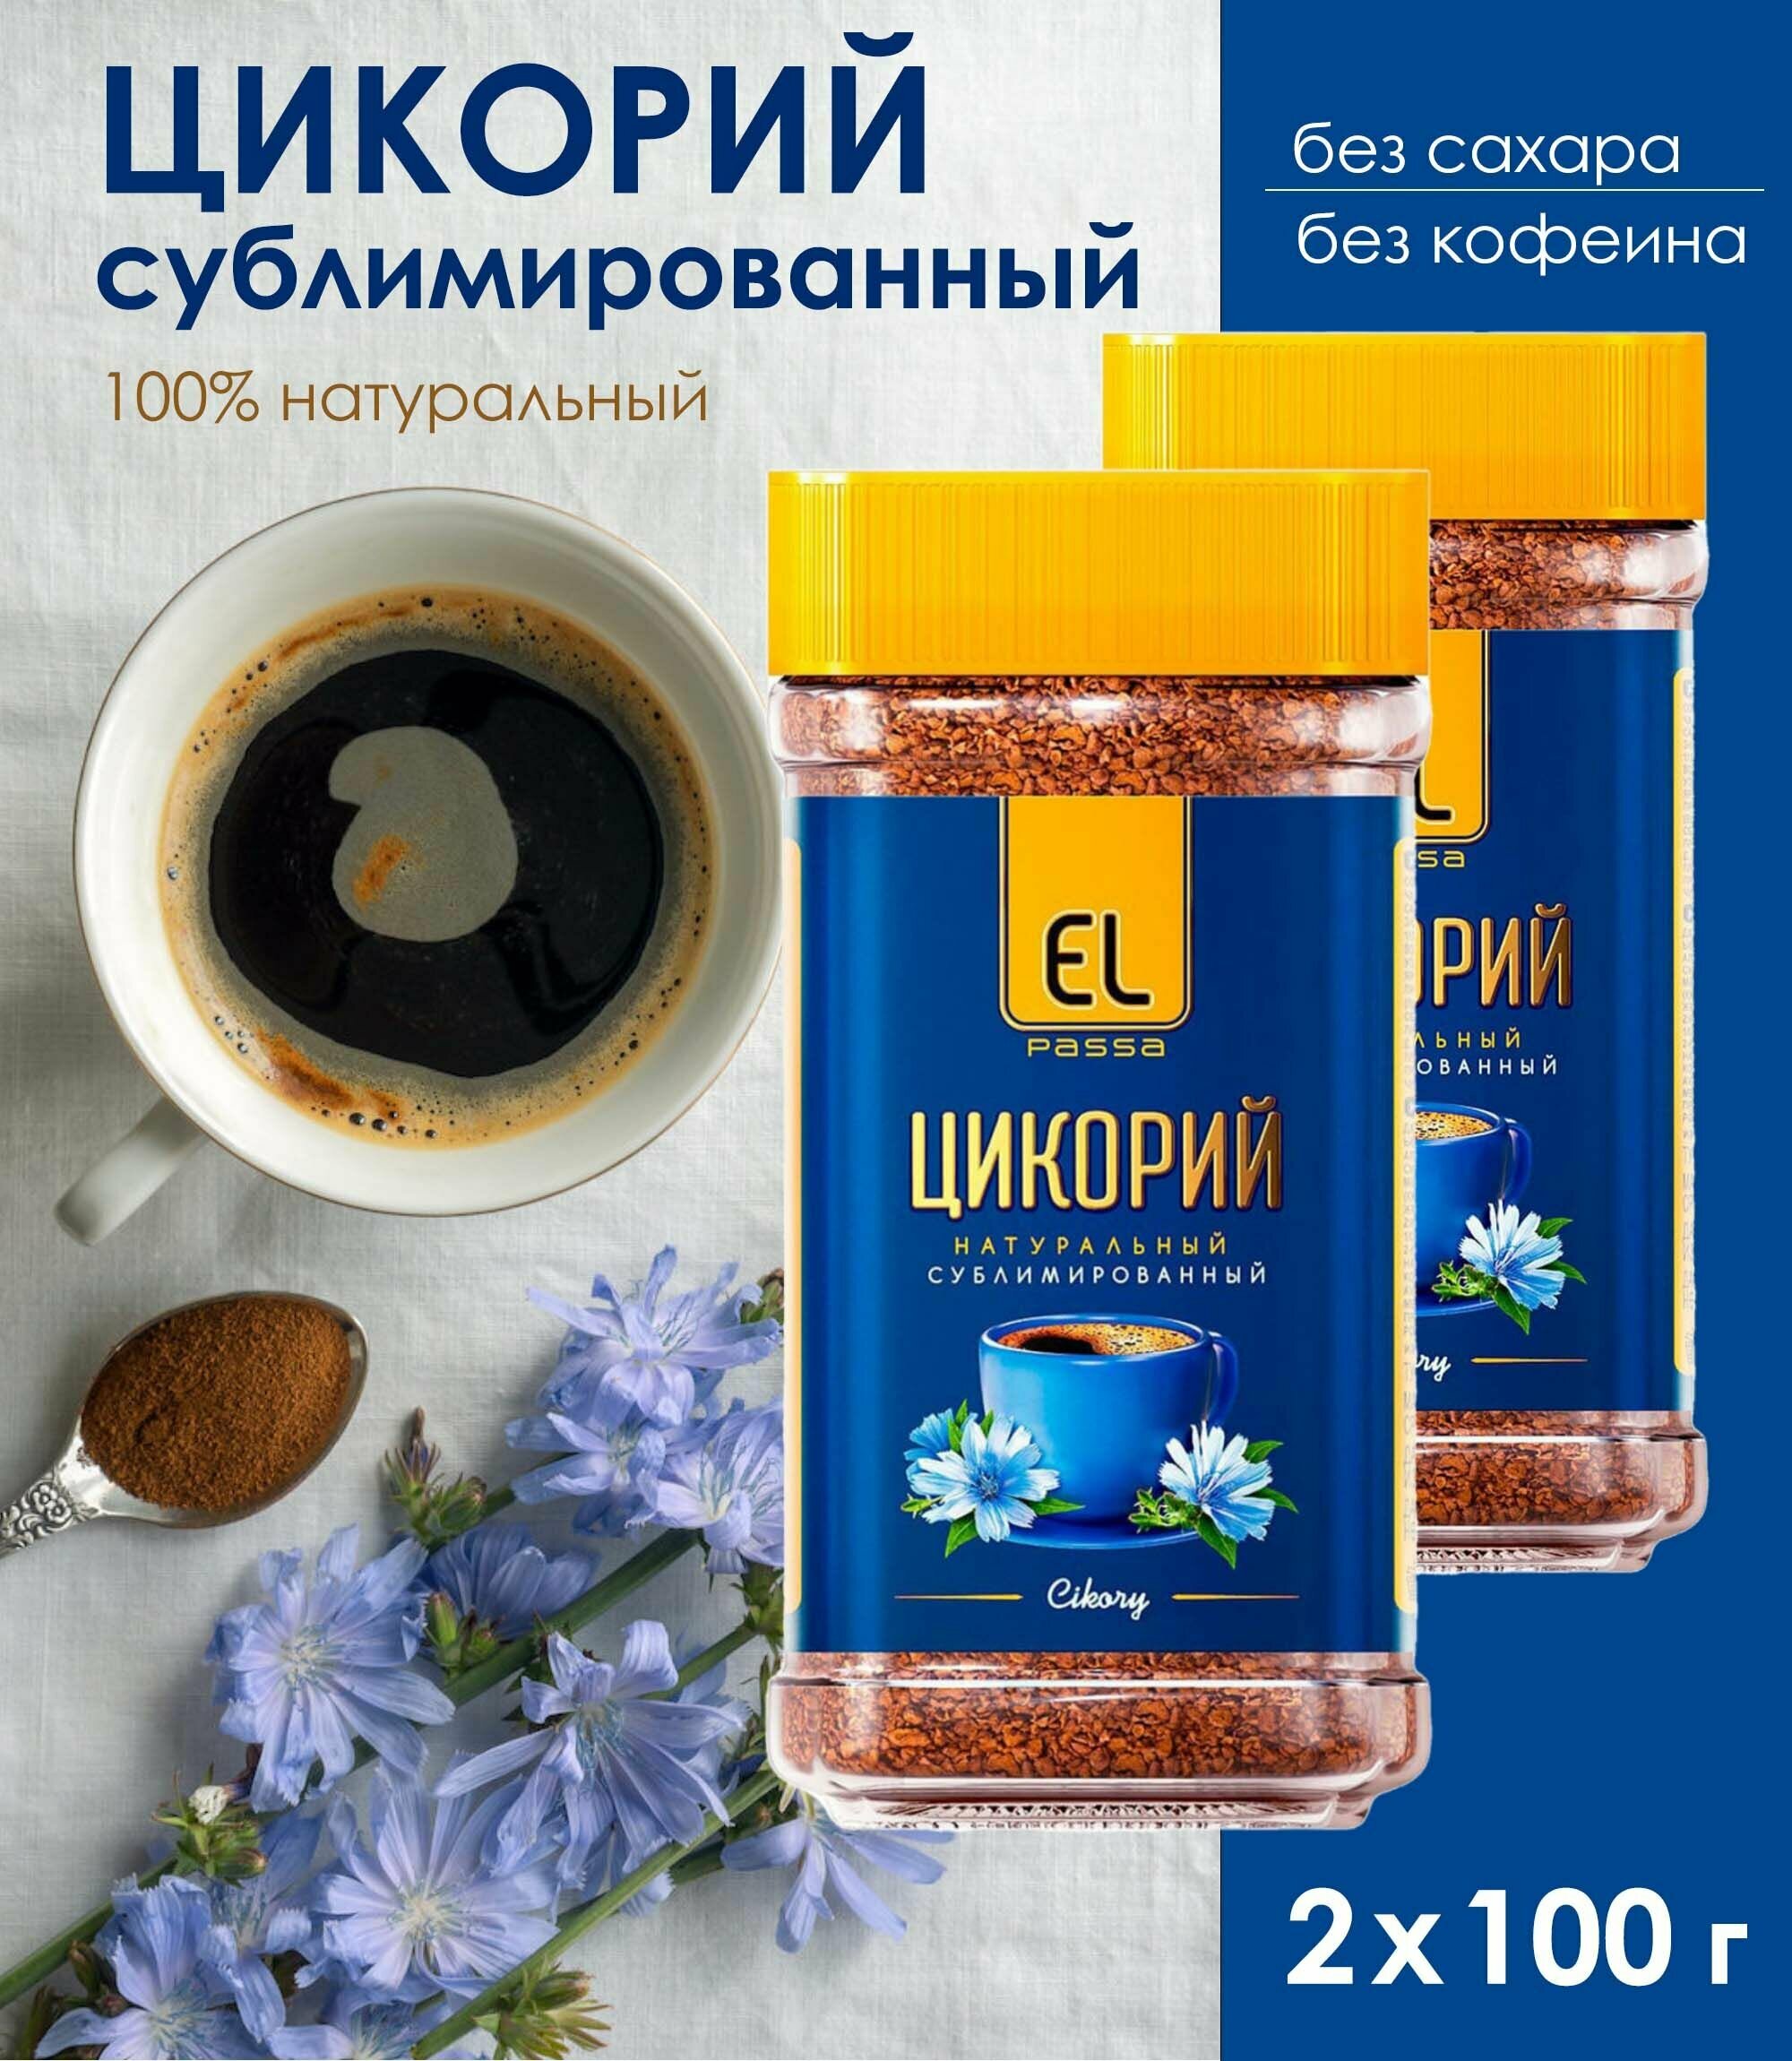 Цикорий сублимированный EL PASSA (100% натуральный, без сахара, без кофеина), 2 уп. по 100 г